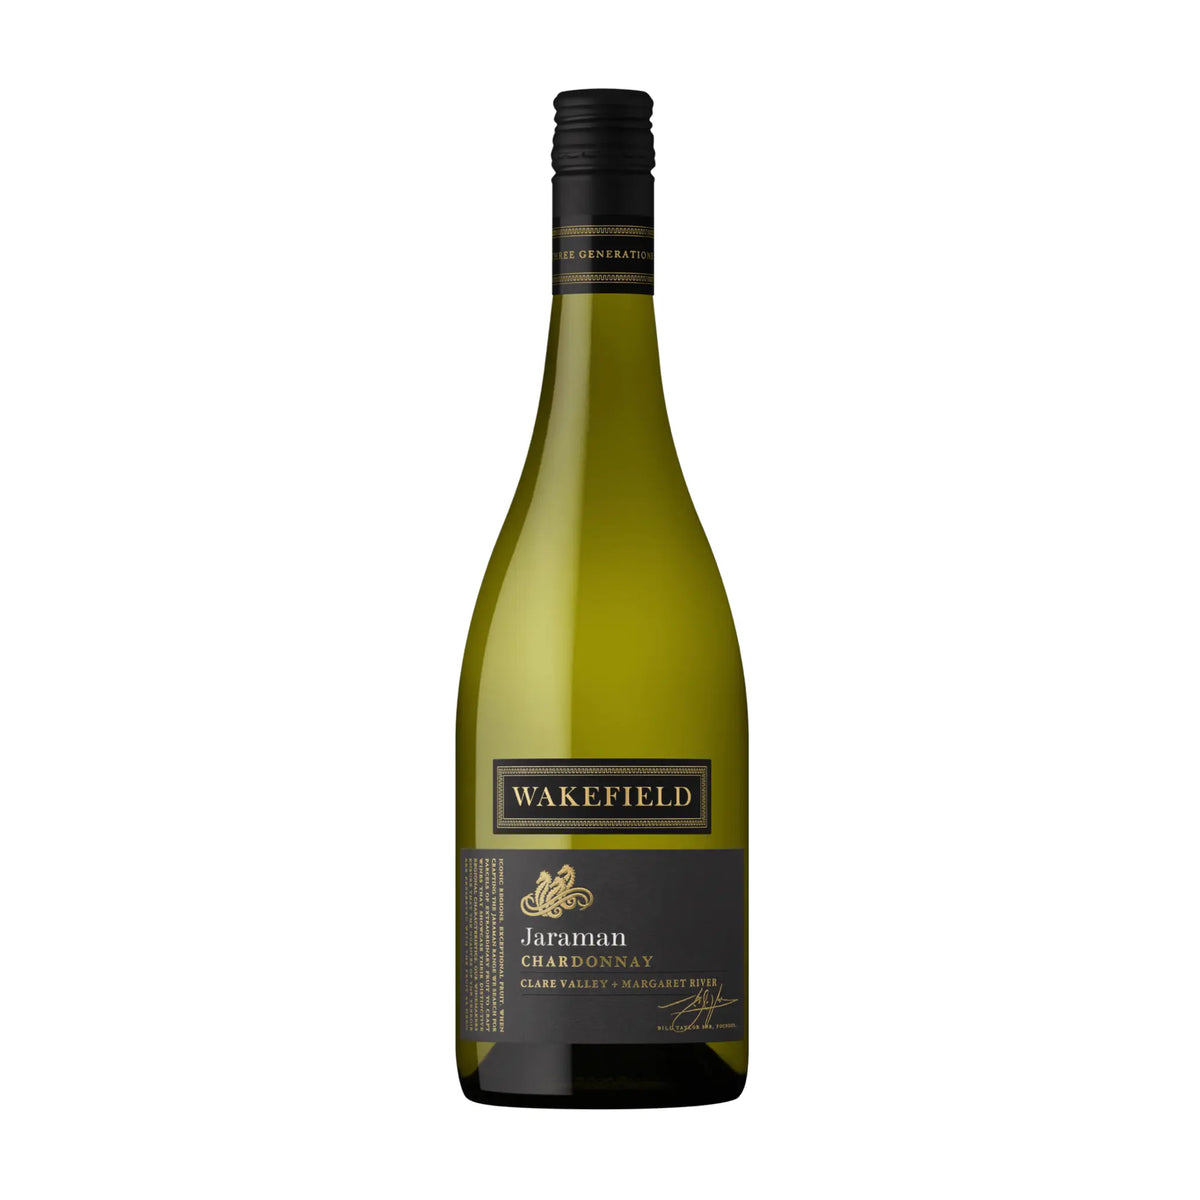 Wakefield-Weißwein-Chardonnay-Clare Valley-Australien-Jaraman Chardonnay-WINECOM